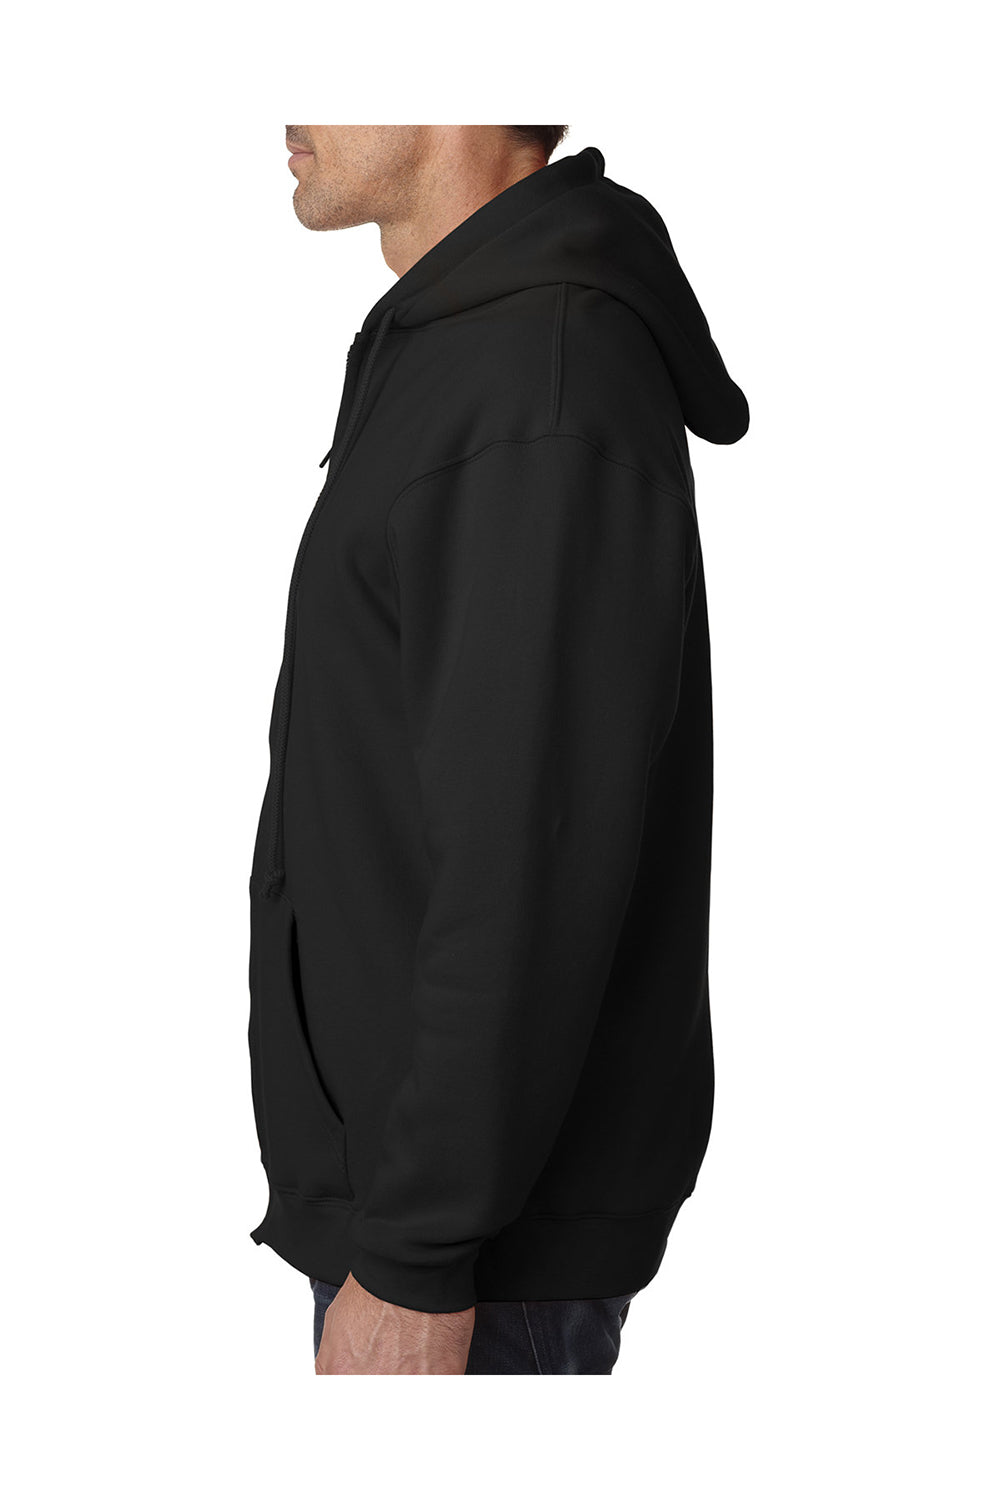 Bayside BA900 Mens USA Made Full Zip Hooded Sweatshirt Hoodie Black Model Side